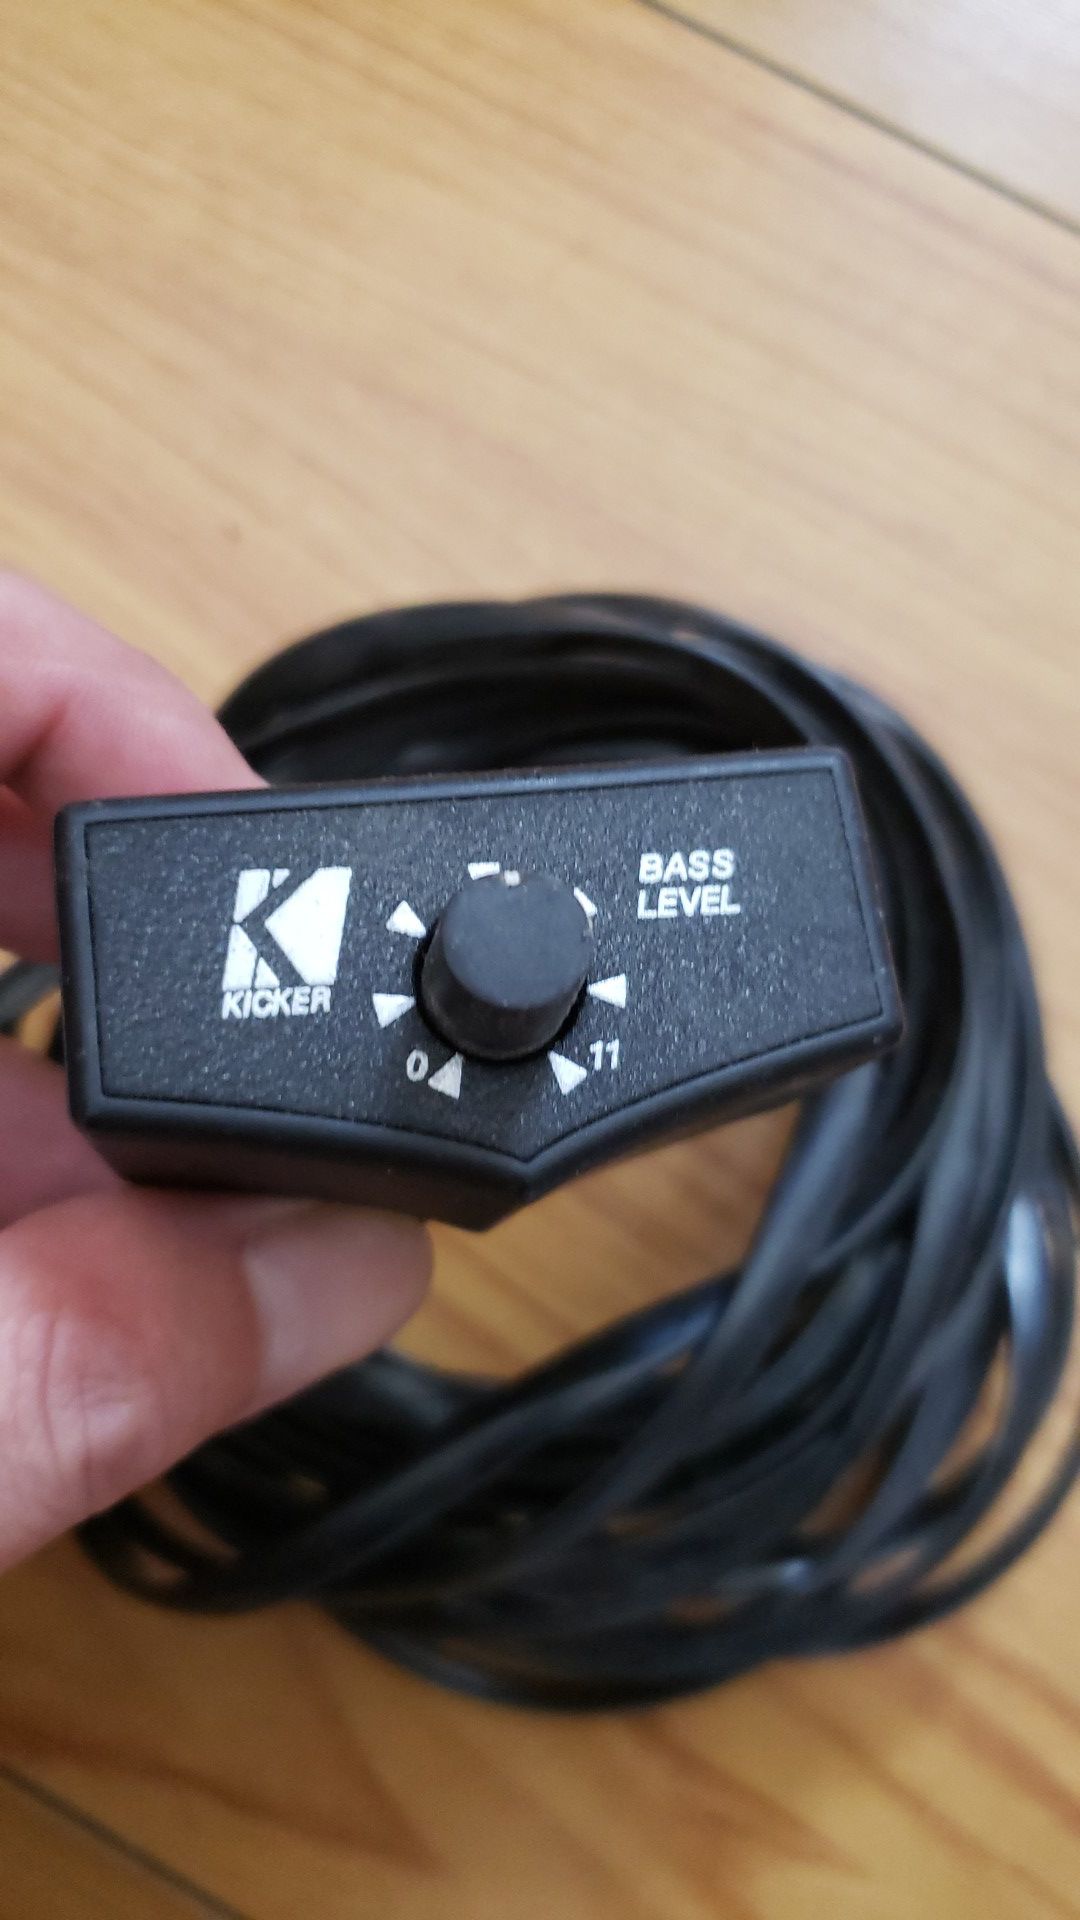 Kicker Bass Level Controller